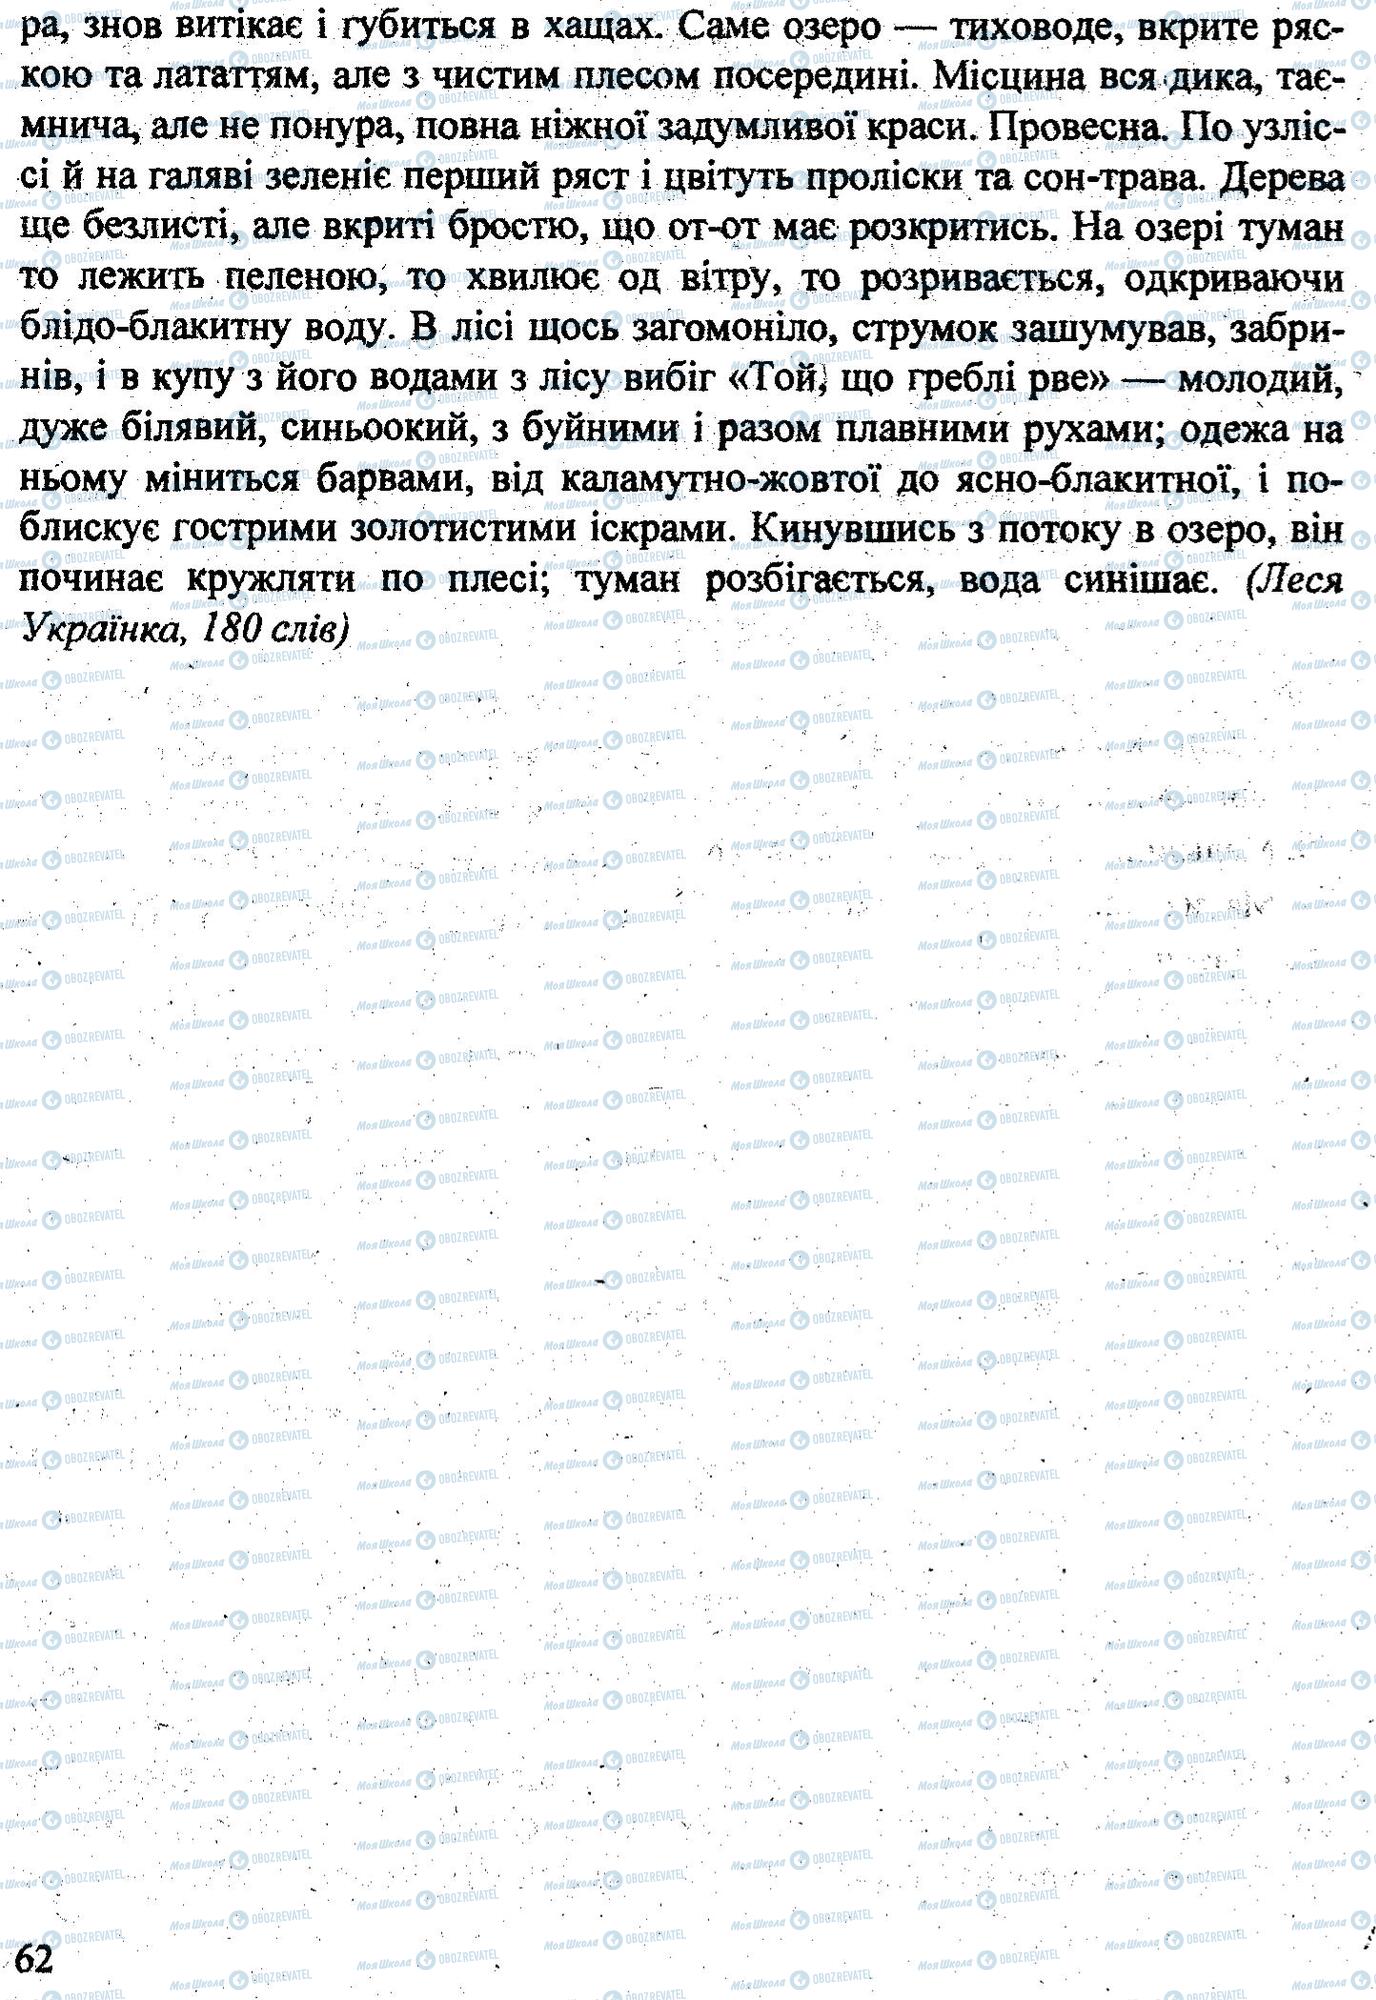 ДПА Укр мова 9 класс страница 0063